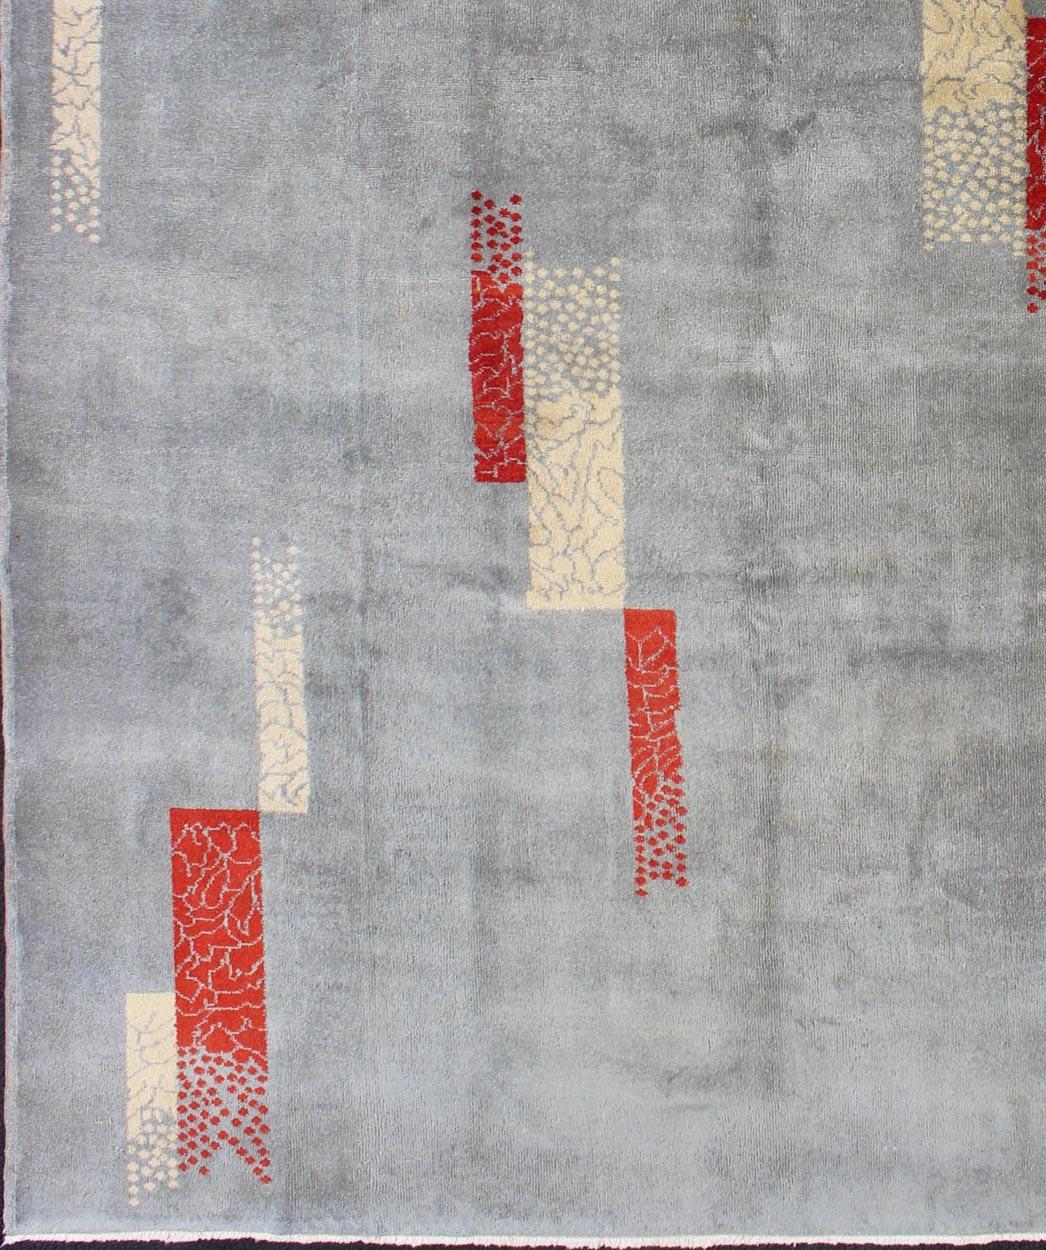 Dieser einzigartige Mid-Century Modern-Teppich mit seinem abstrakten Design auf einem blassgraublauen Hintergrund ist in Kastenform gestaltet und mit einer Mischung aus satten Rot- und Cremetönen gefleckt und gesprenkelt, so dass er hervorragend zu